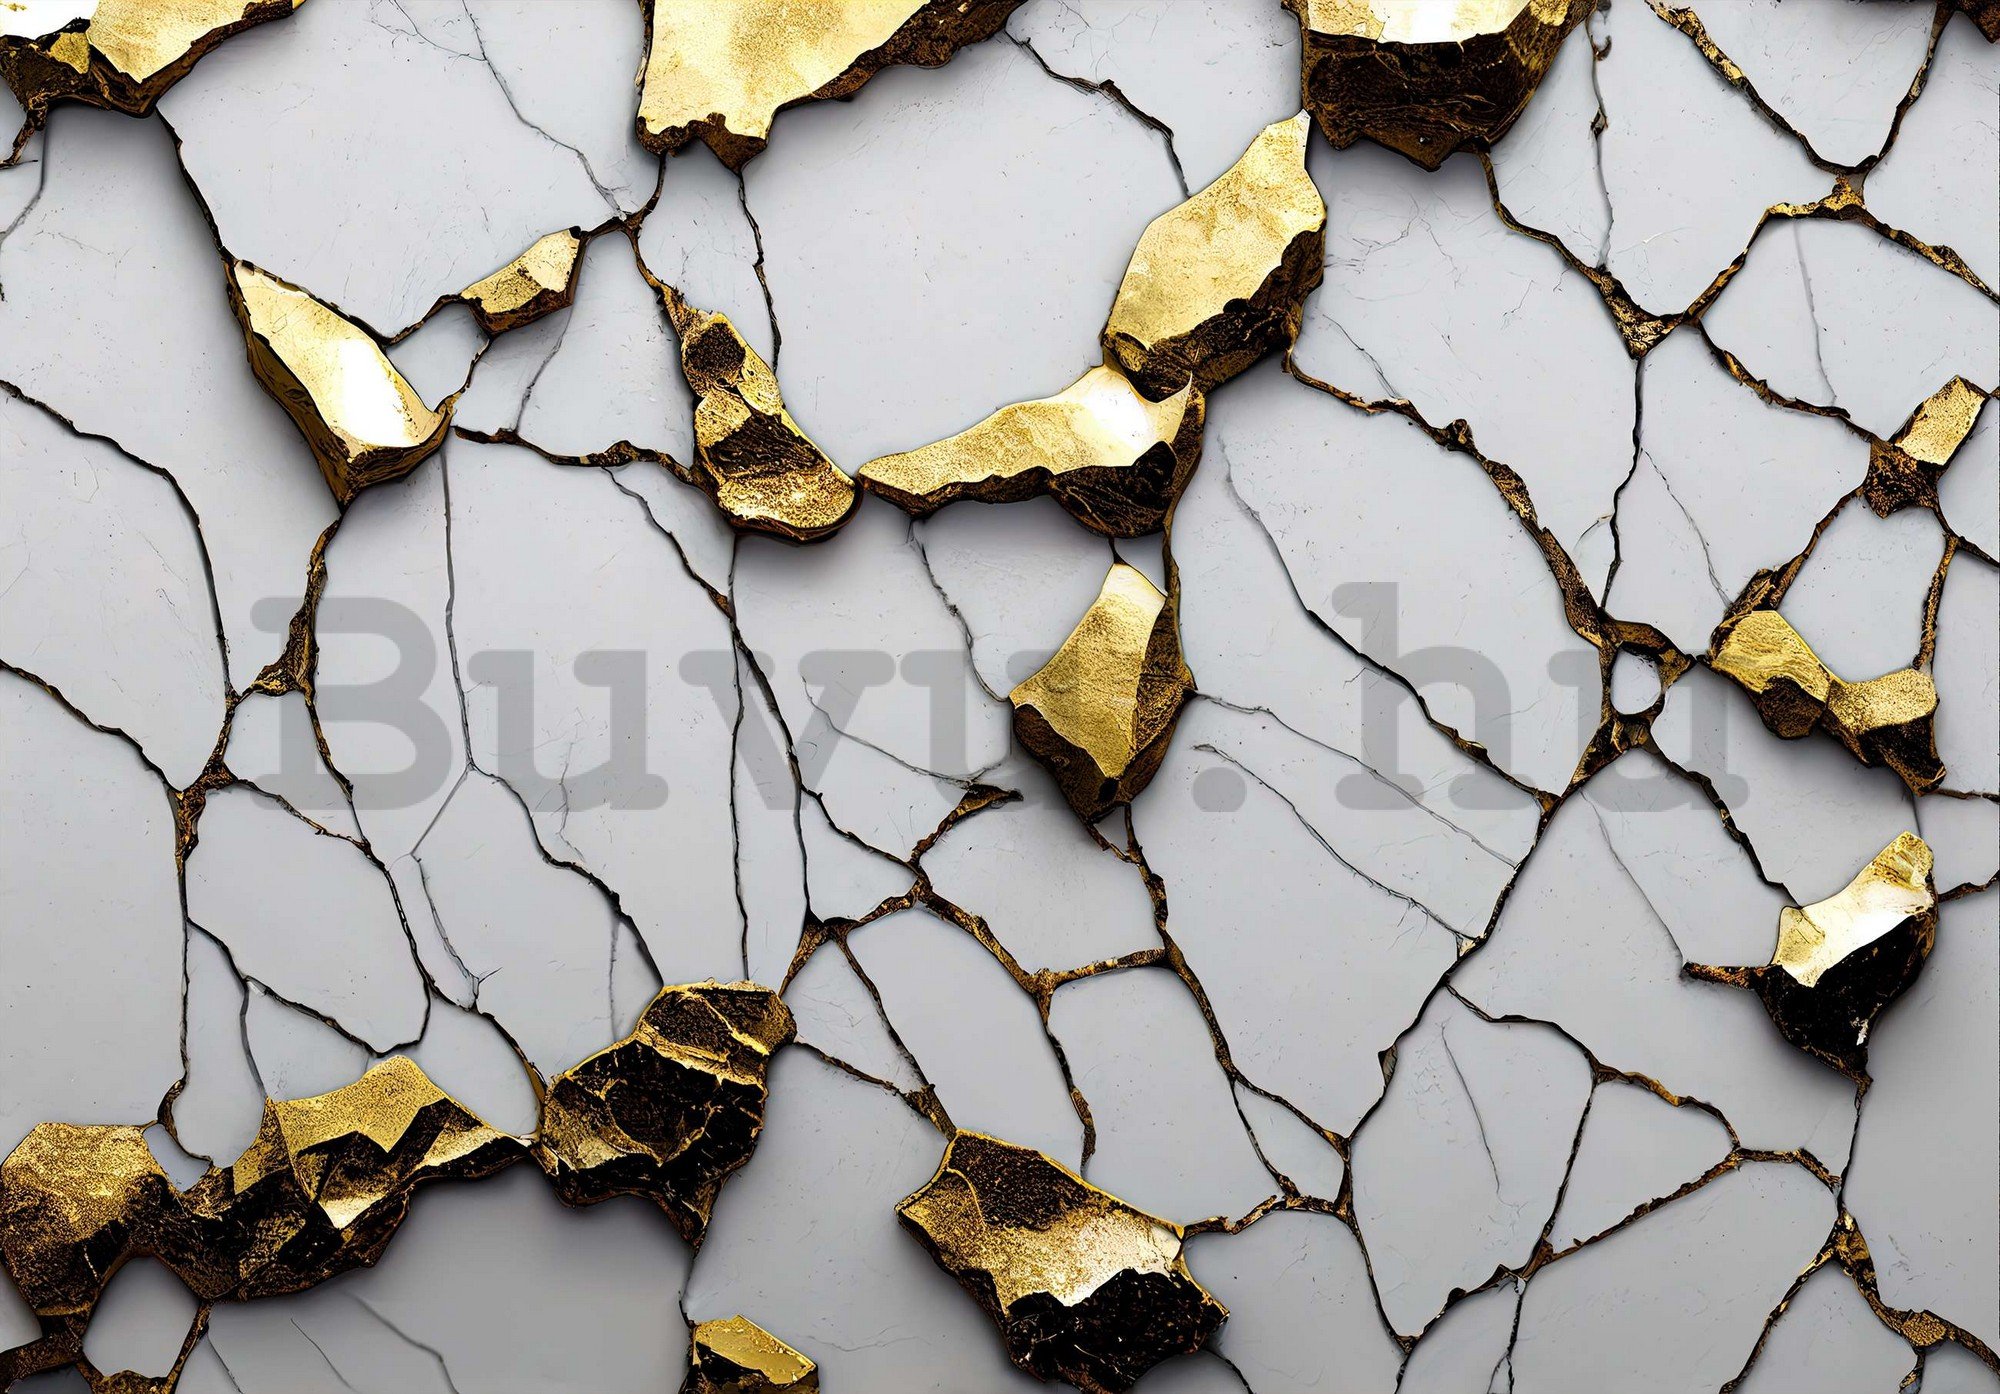 Vlies fotótapéta: Arany márvány csillogás utánzata fehér falakkal - 416x254 cm